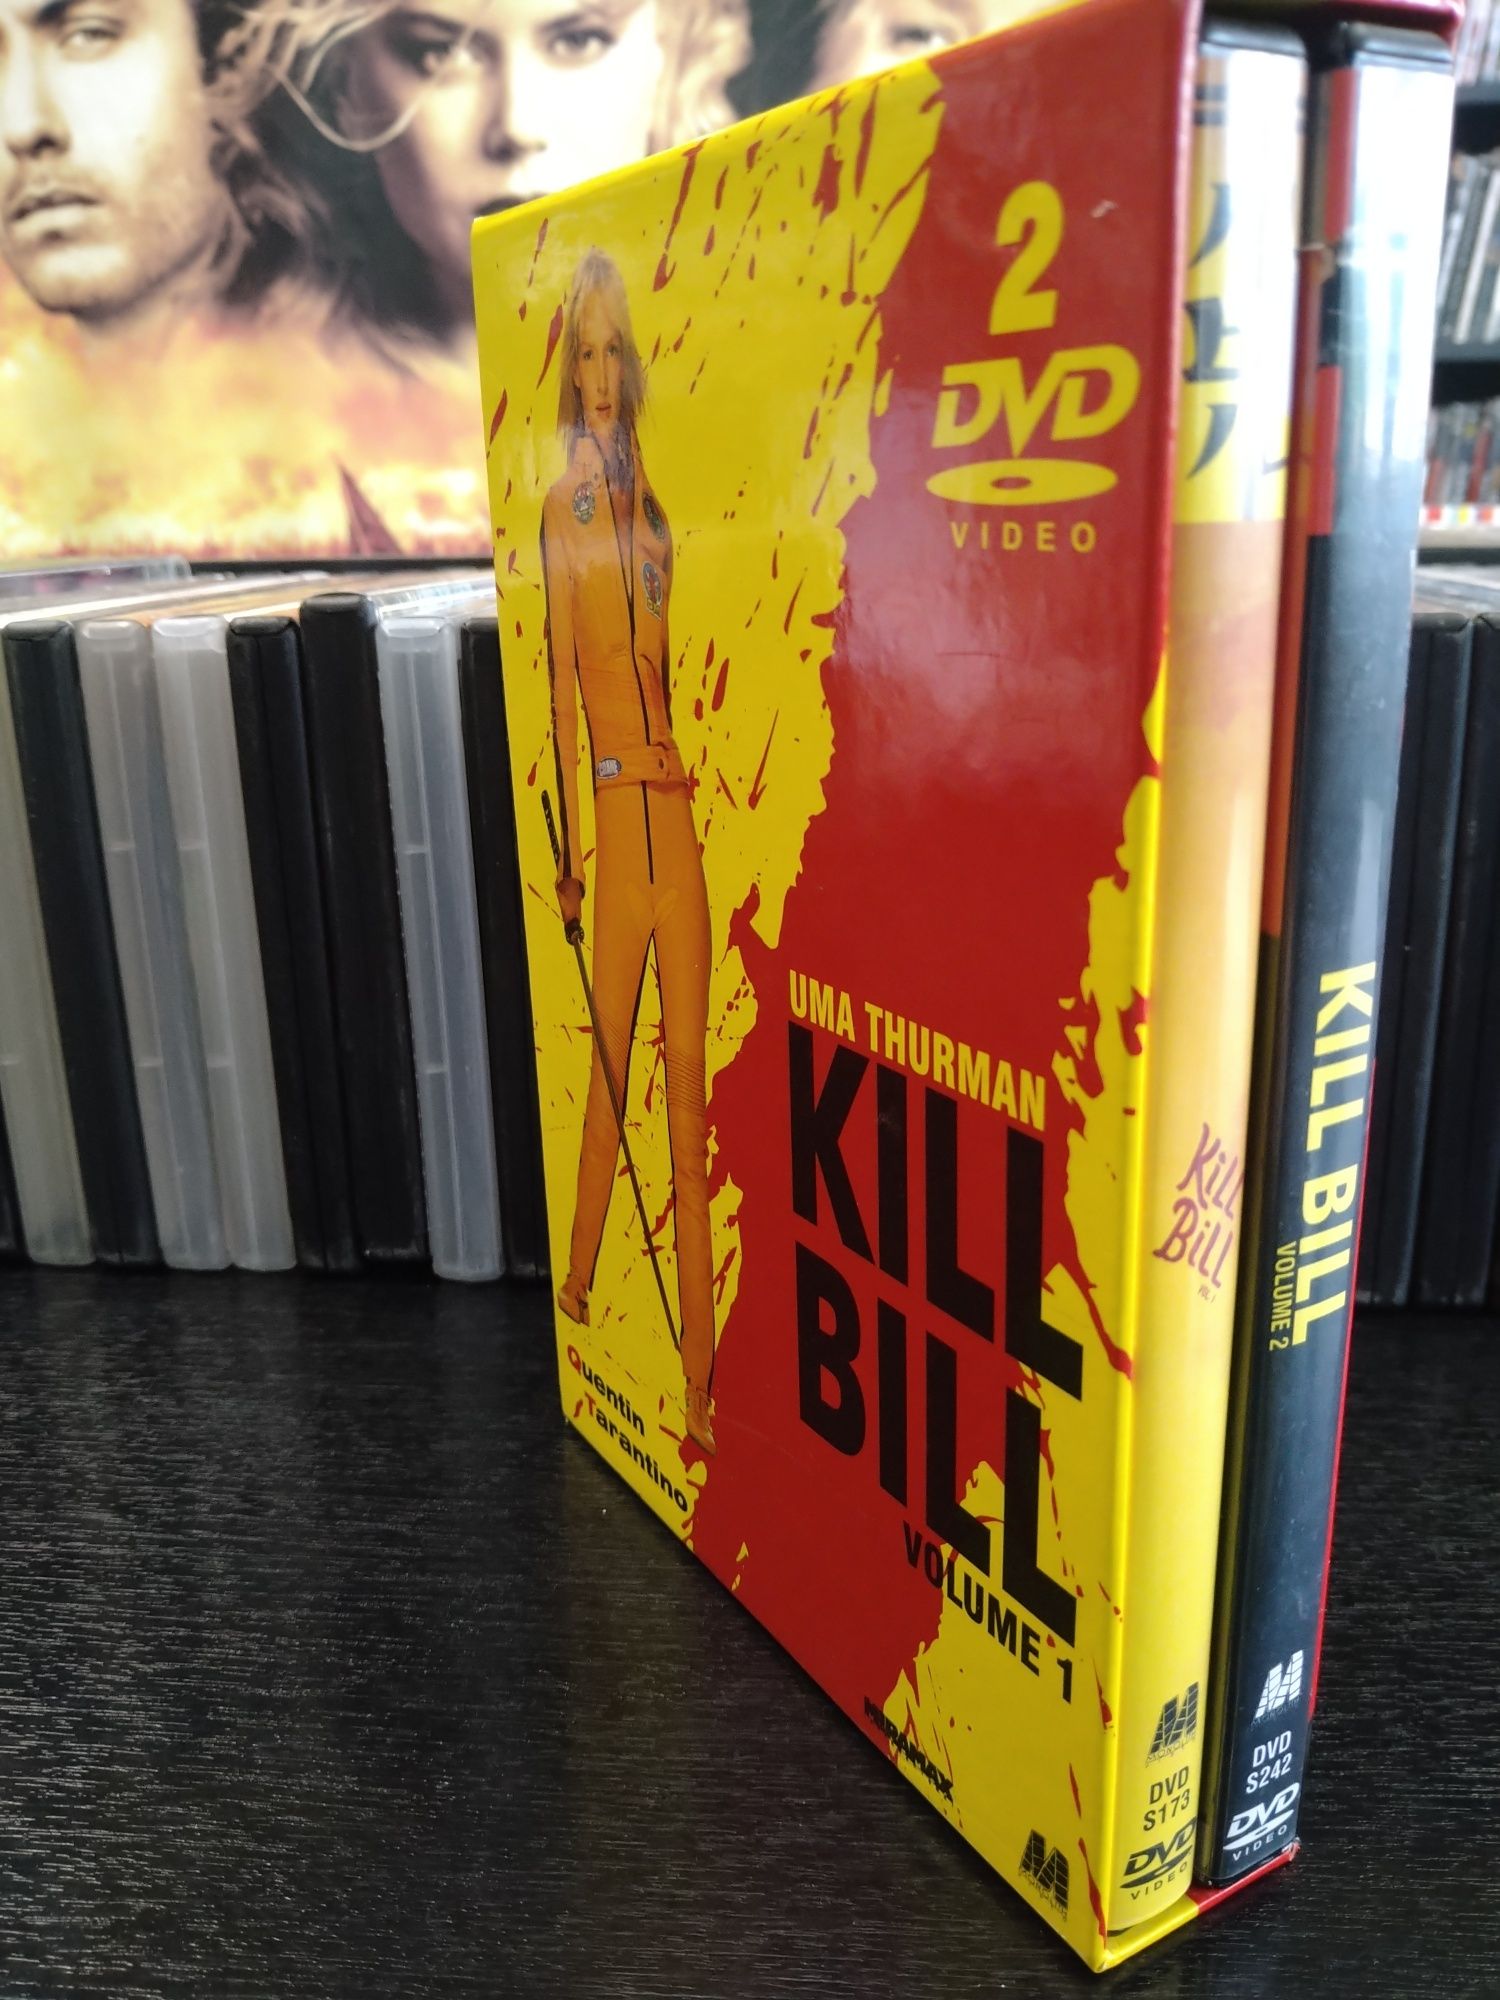 Kolekcjonerskie wydanie dwupłytowe filmów Kill Bill 1+2